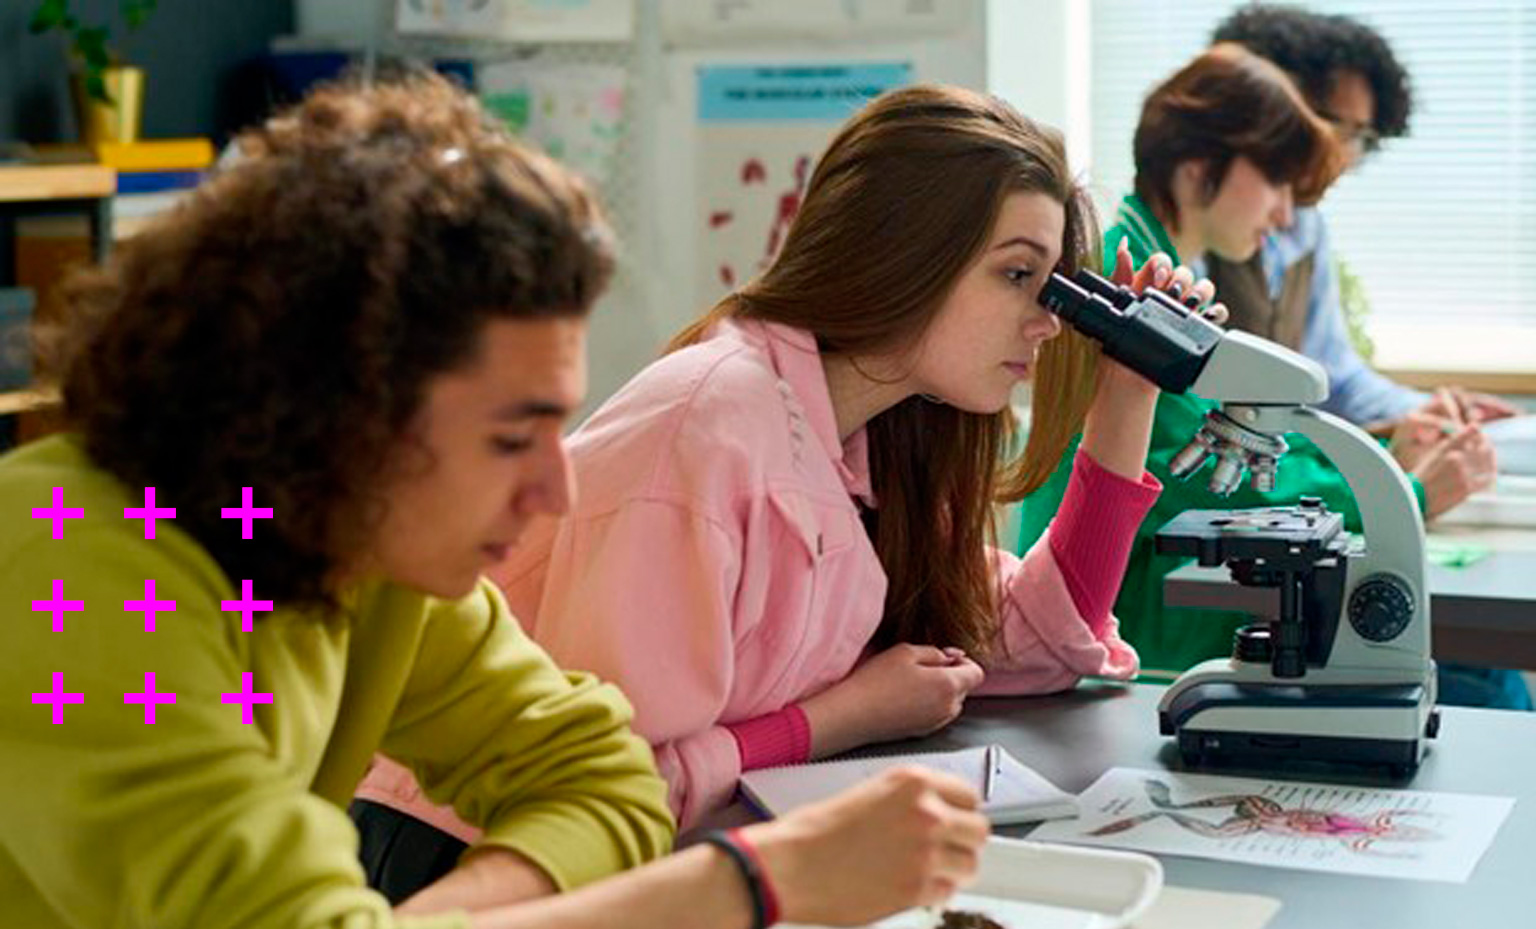 grupo de quatro estudantes adolescentes composto por dois homens e duas mulheres estudando a anatomia de um sapo dissecado em uma aula prática de biologia.